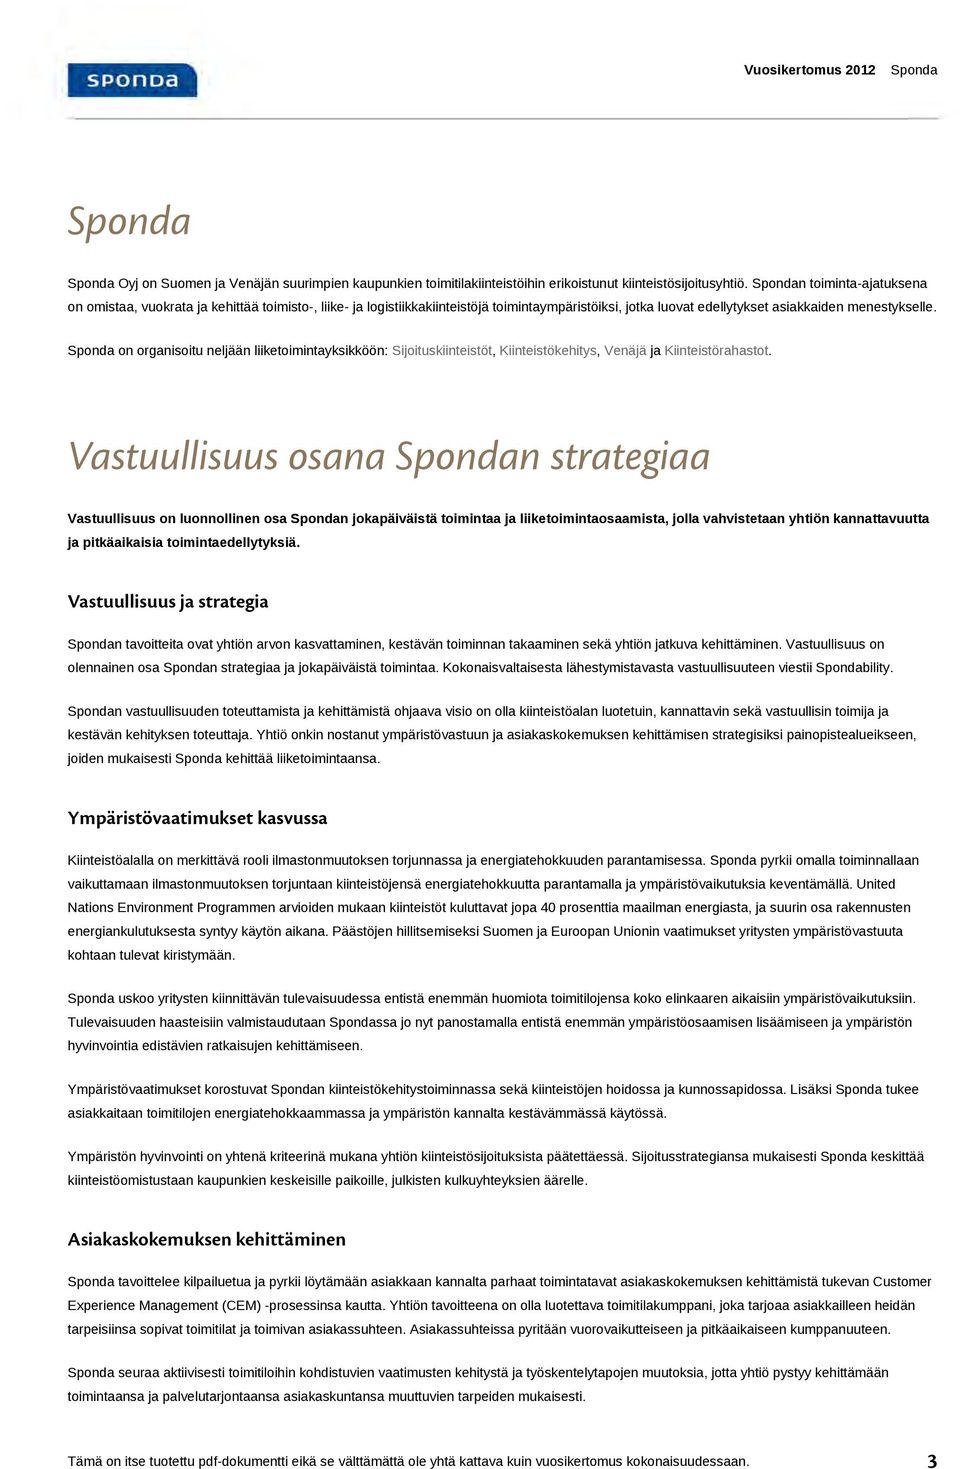 Sponda on organisoitu neljään liiketoimintayksikköön: Sijoituskiinteistöt, Kiinteistökehitys, Venäjä ja Kiinteistörahastot.